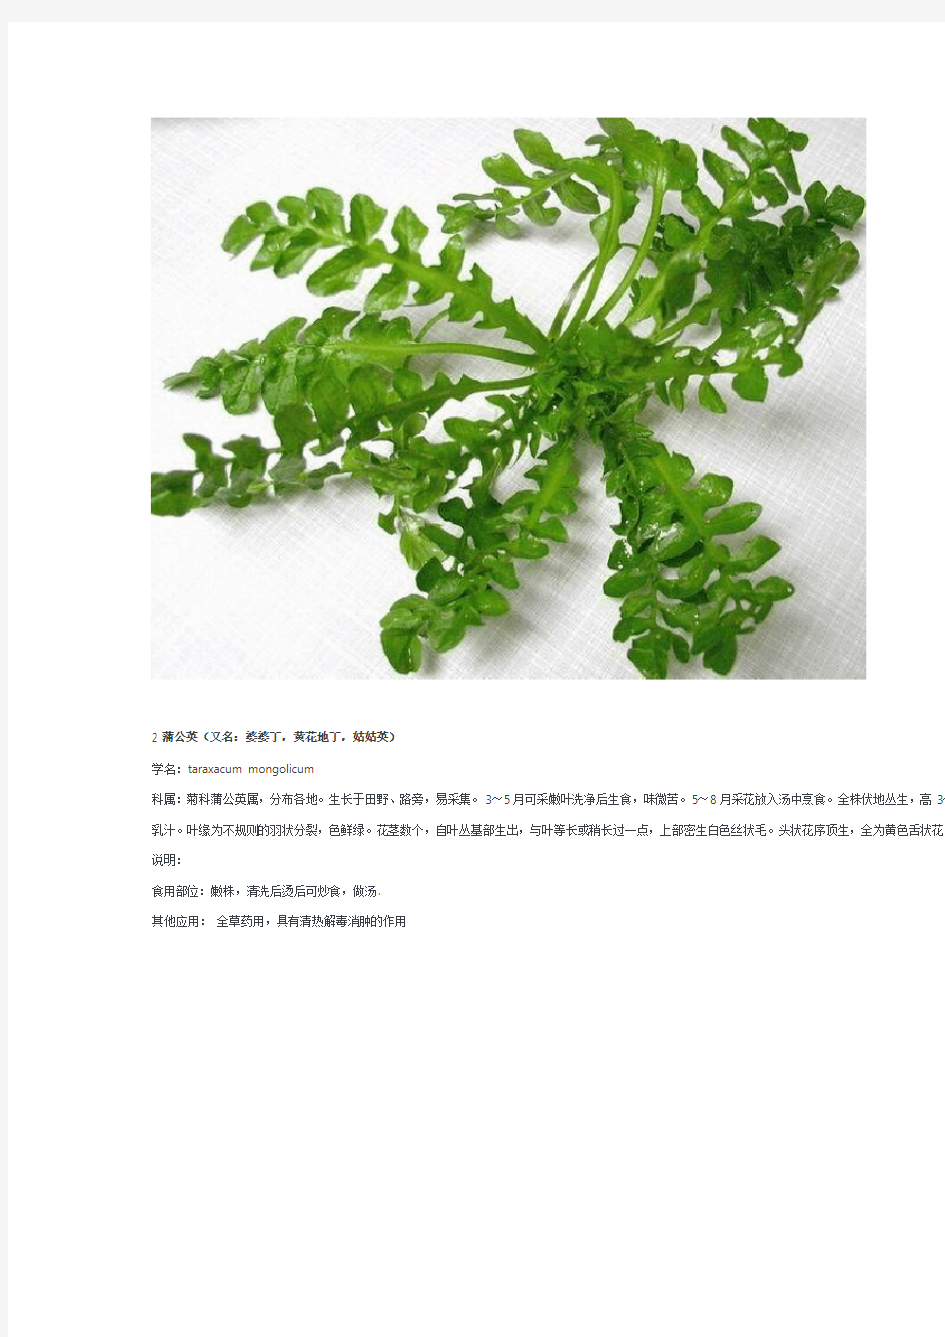 中国常见可食野生植物图谱